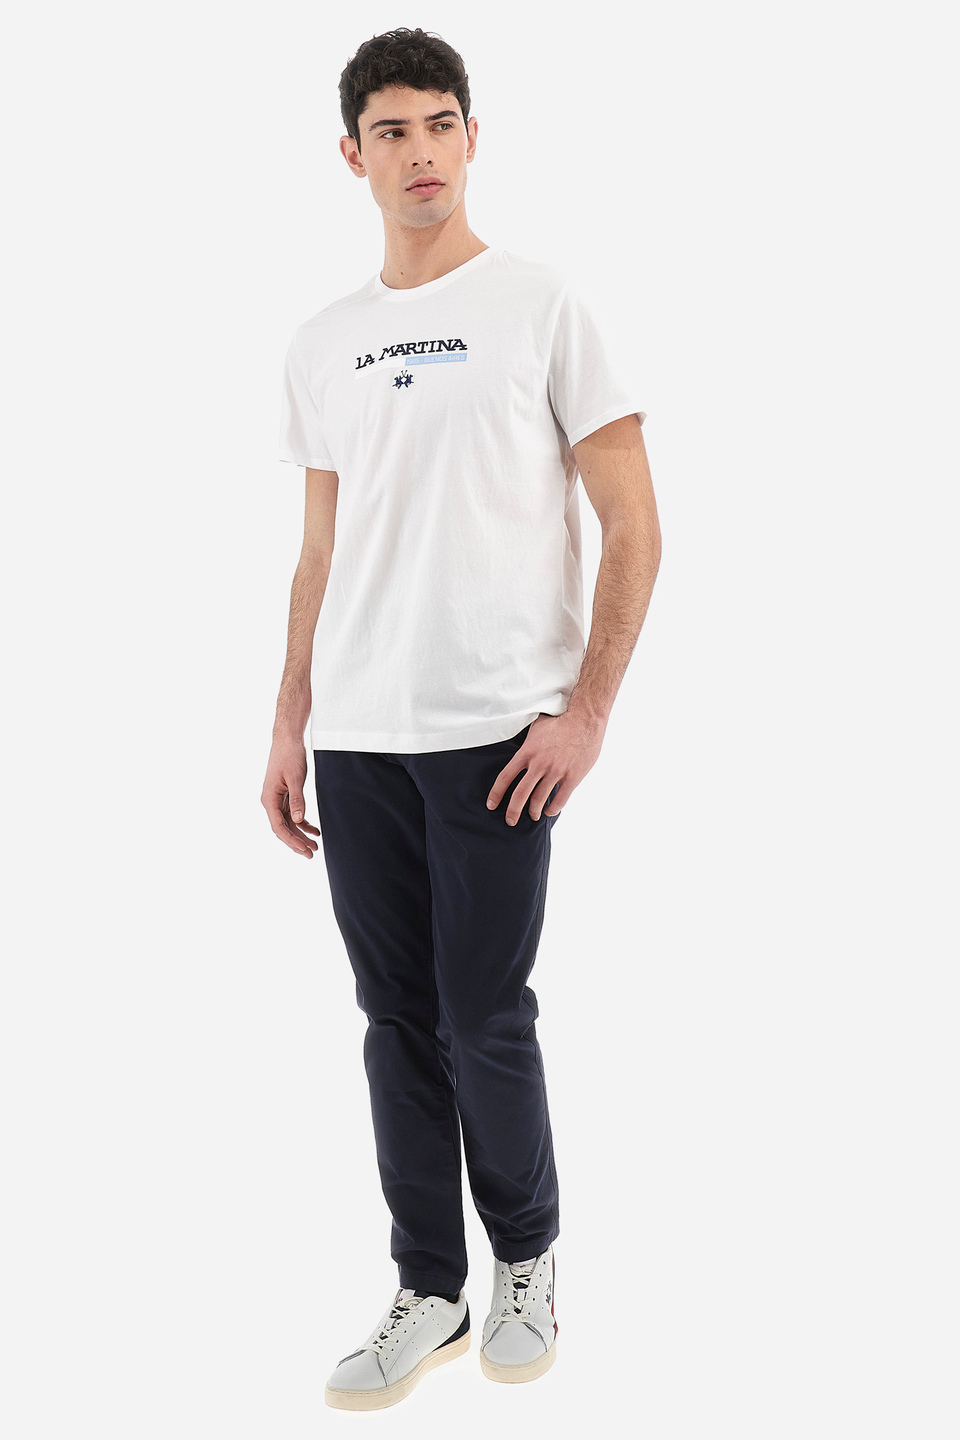 Regular fit 100% cotton men's trousers - Vardice | La Martina - Official Online Shop